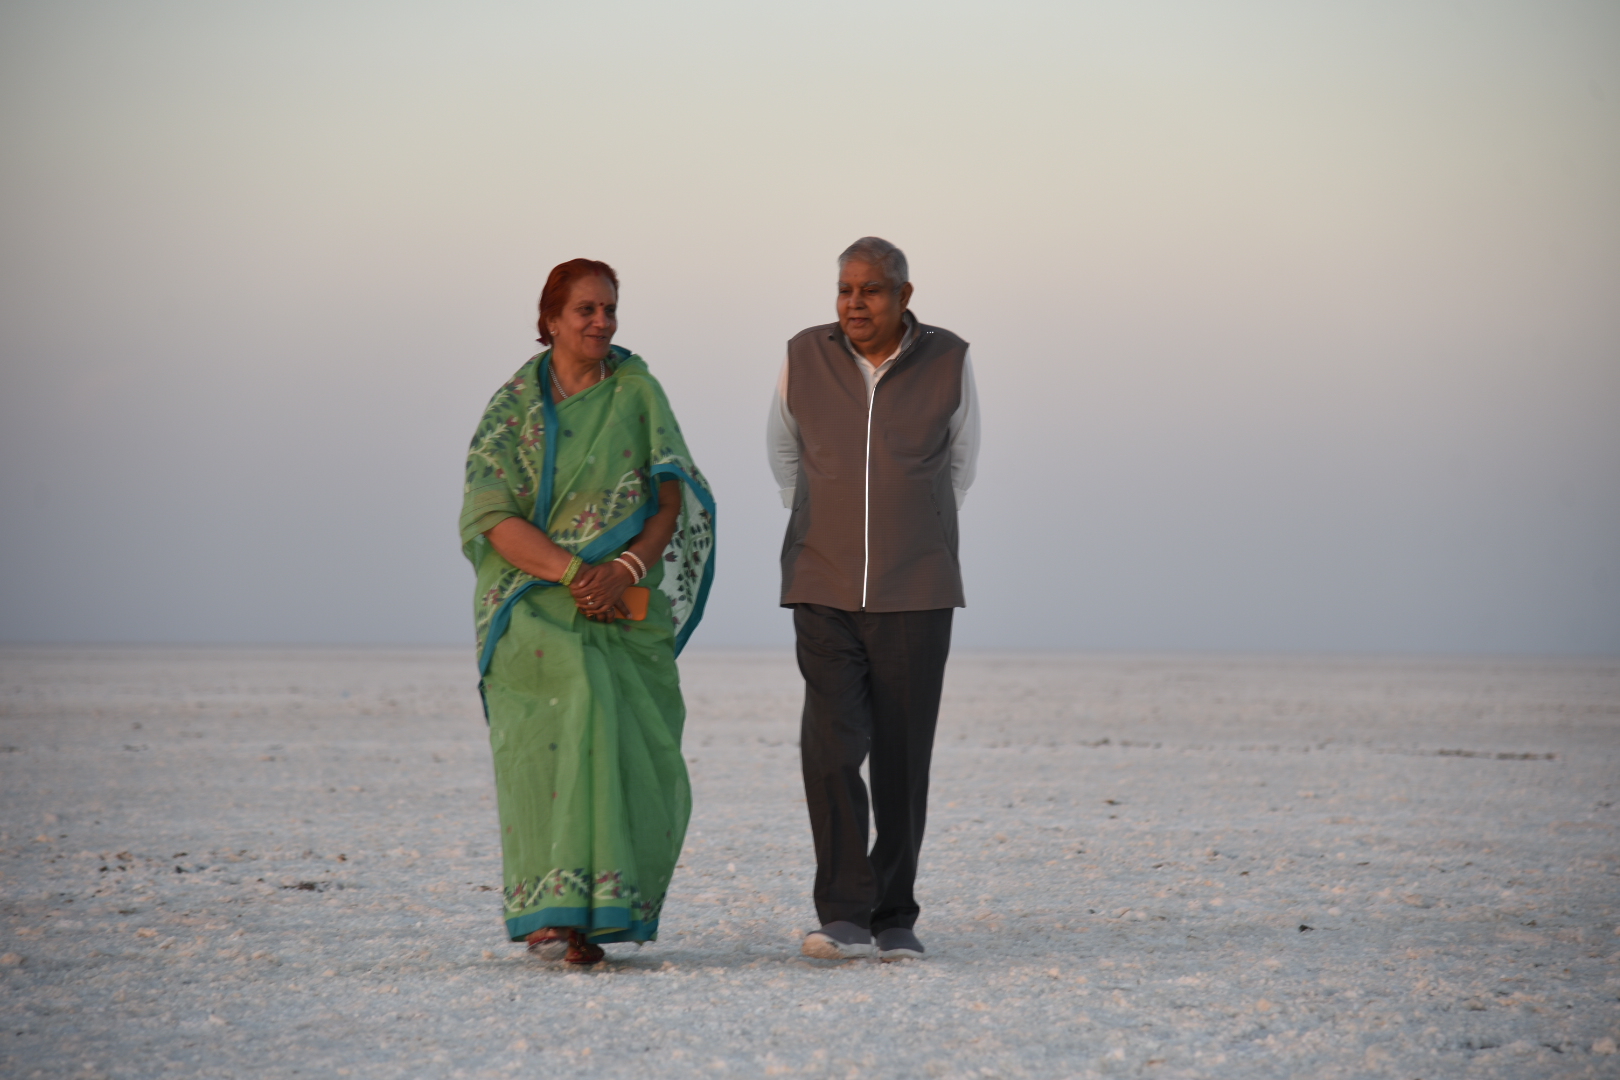 18 फरवरी, 2023 को उपराष्ट्रपति श्री जगदीप धनखड़ और डॉ. सुदेश धनखड़ रण उत्सव की अपनी यात्रा के दौरान कच्छ के रण में सूर्यास्त की छटाओं को निहारा ।